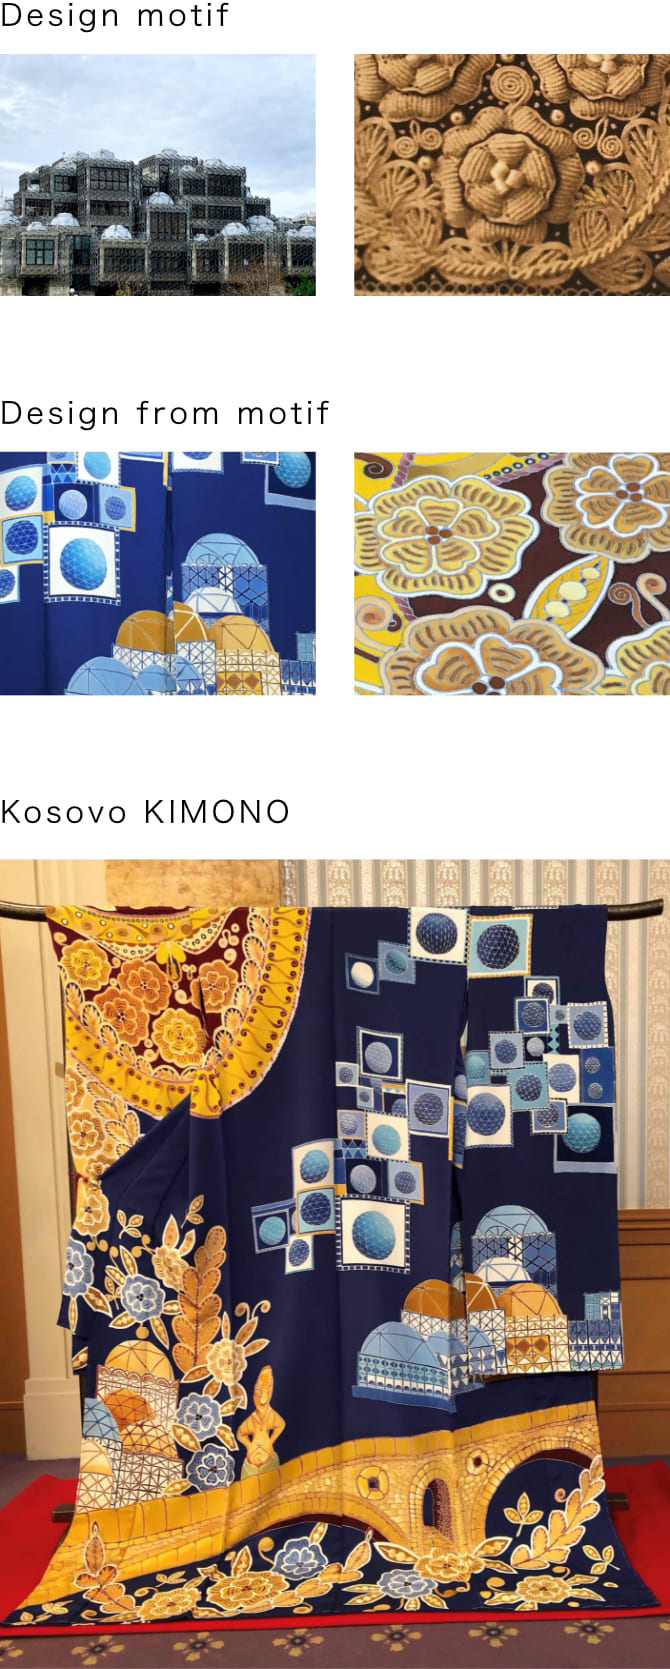 Kosovo KIMONO,motif,naoe kawamura